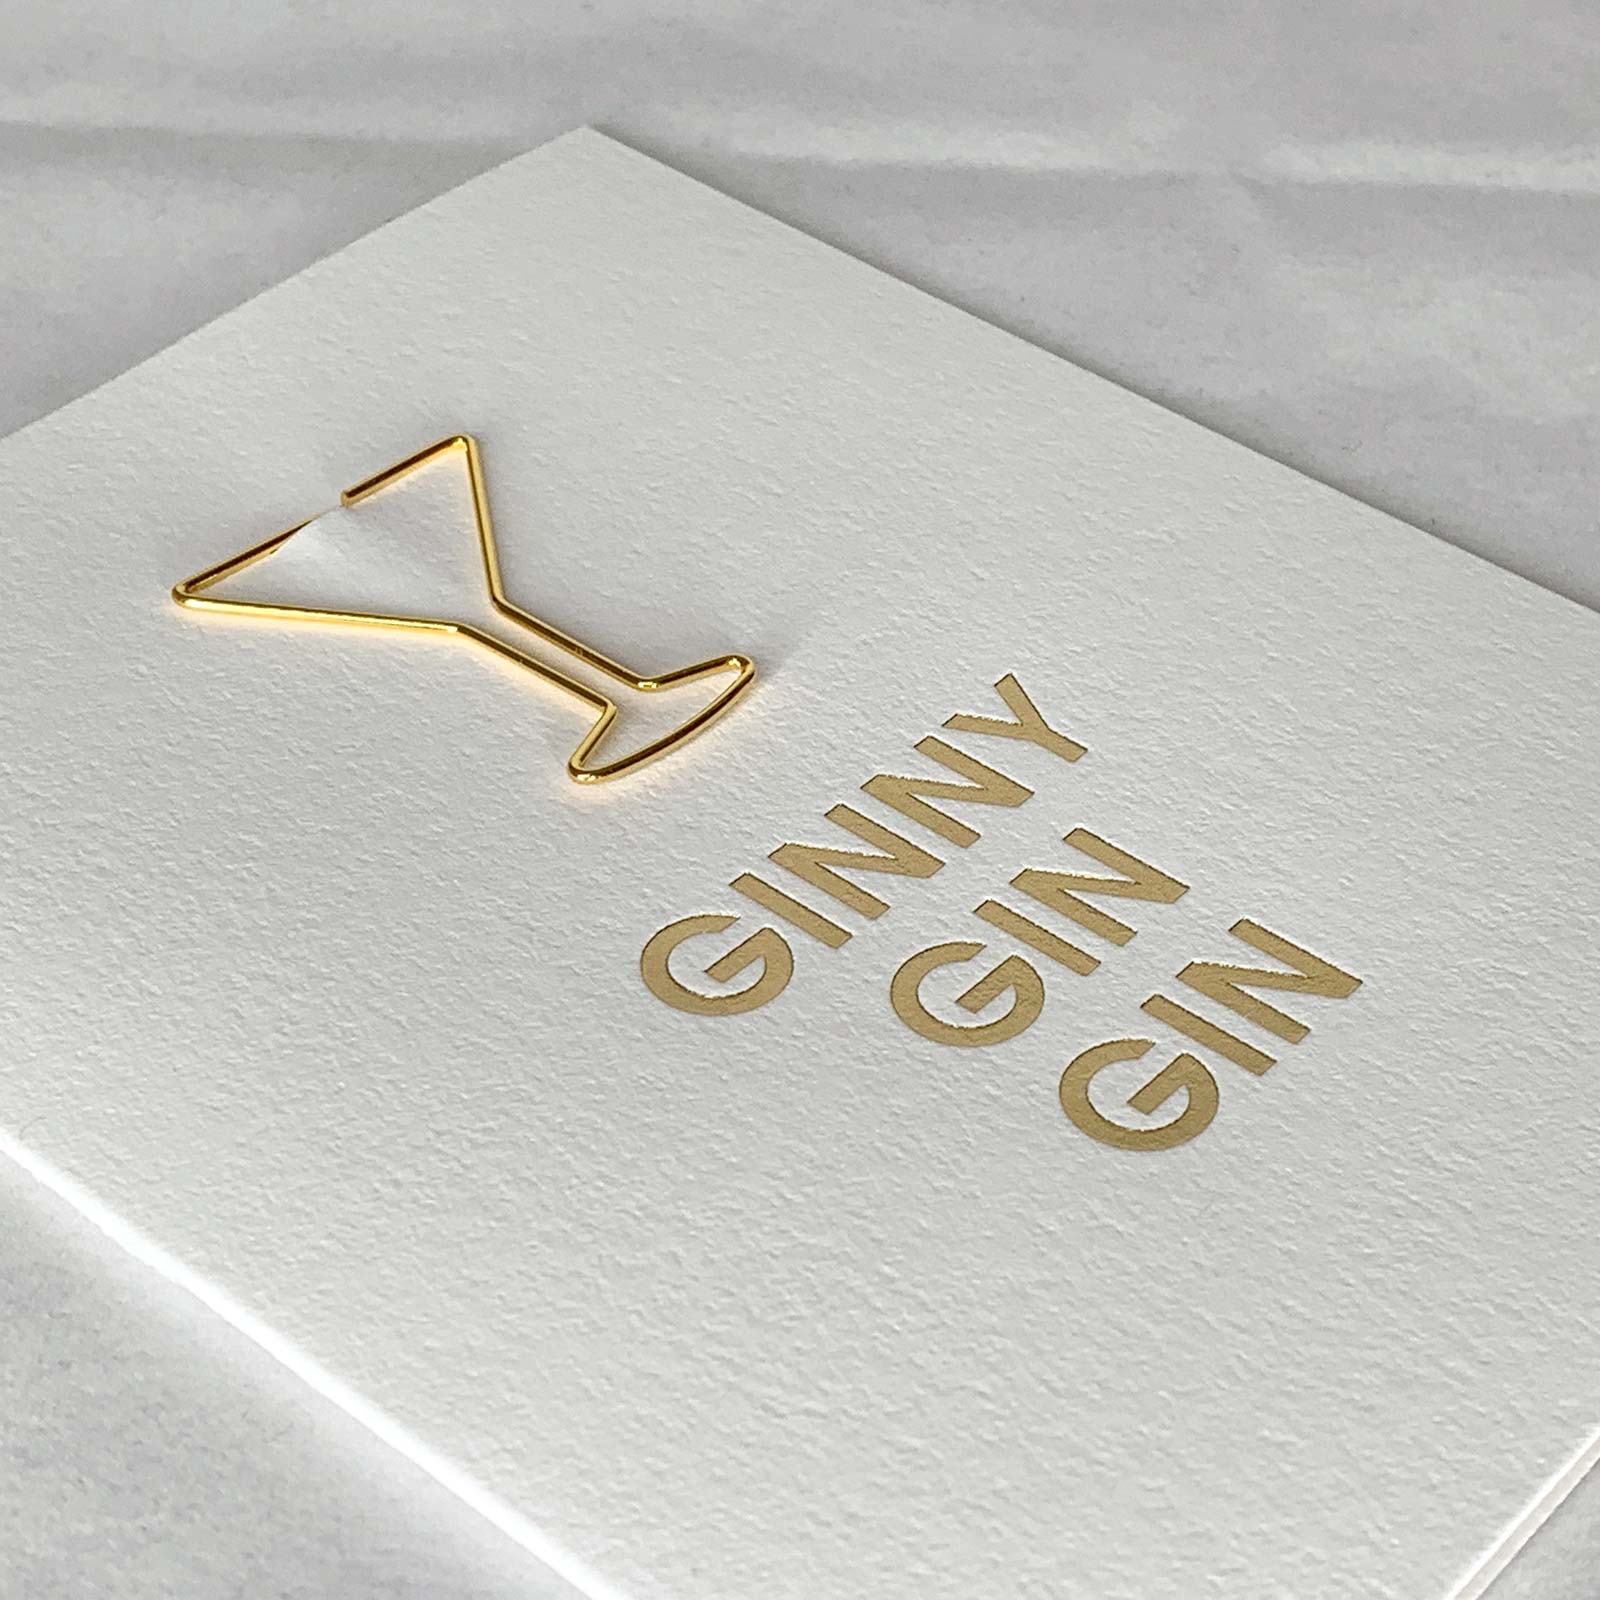 Ginny Gin Gin Friendship Martini Glass Paper Clip Letterpress Card Close Up